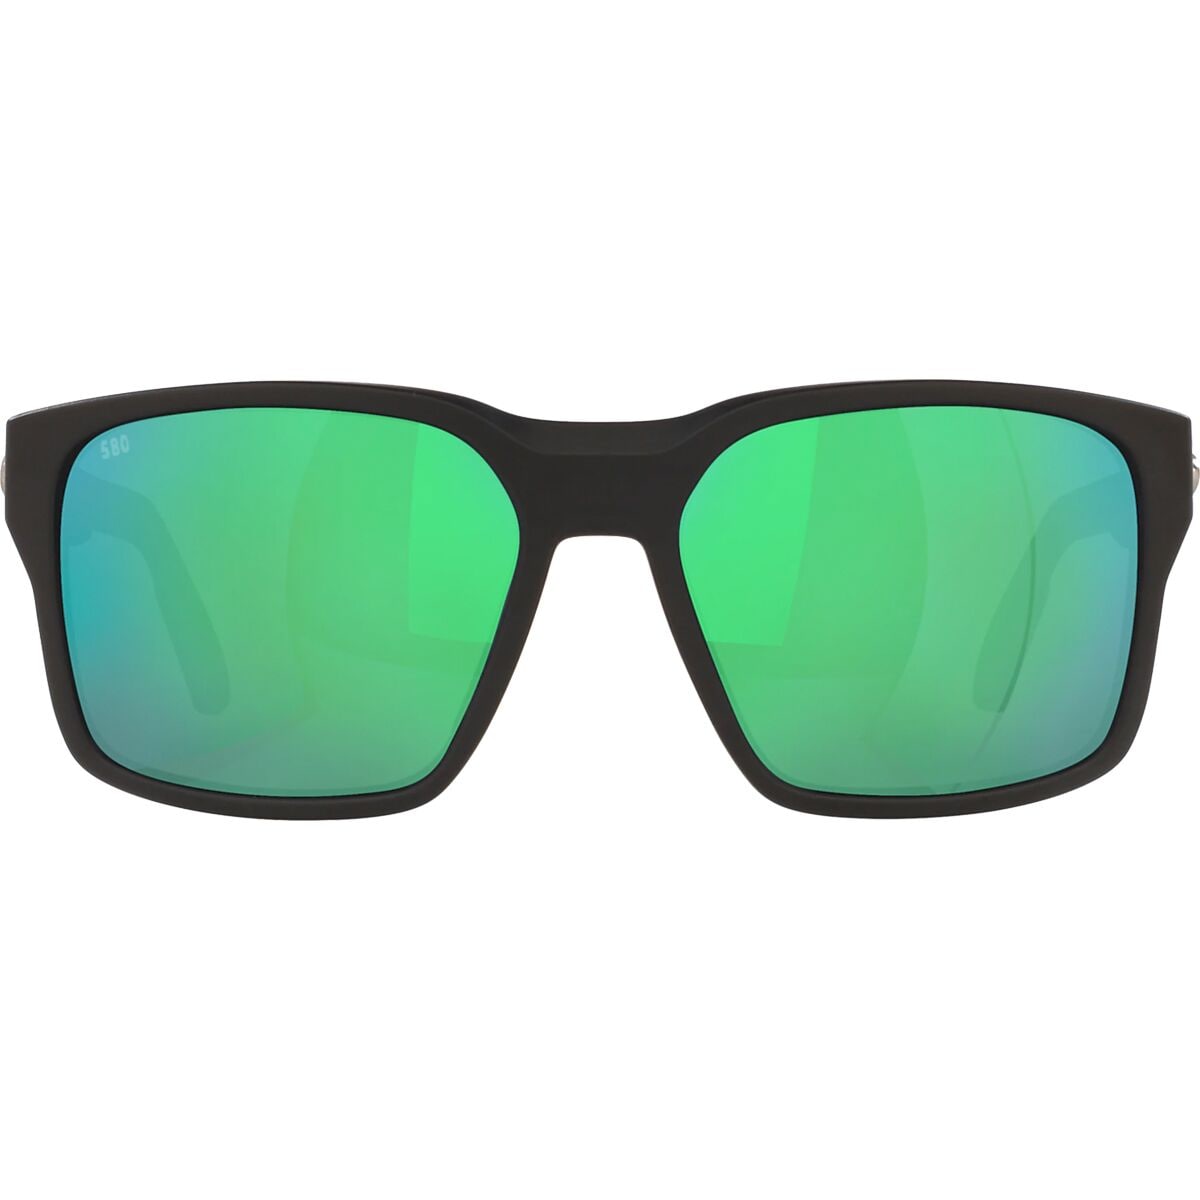 Costa Tailwalker 580G Polarized Sunglasses - Men